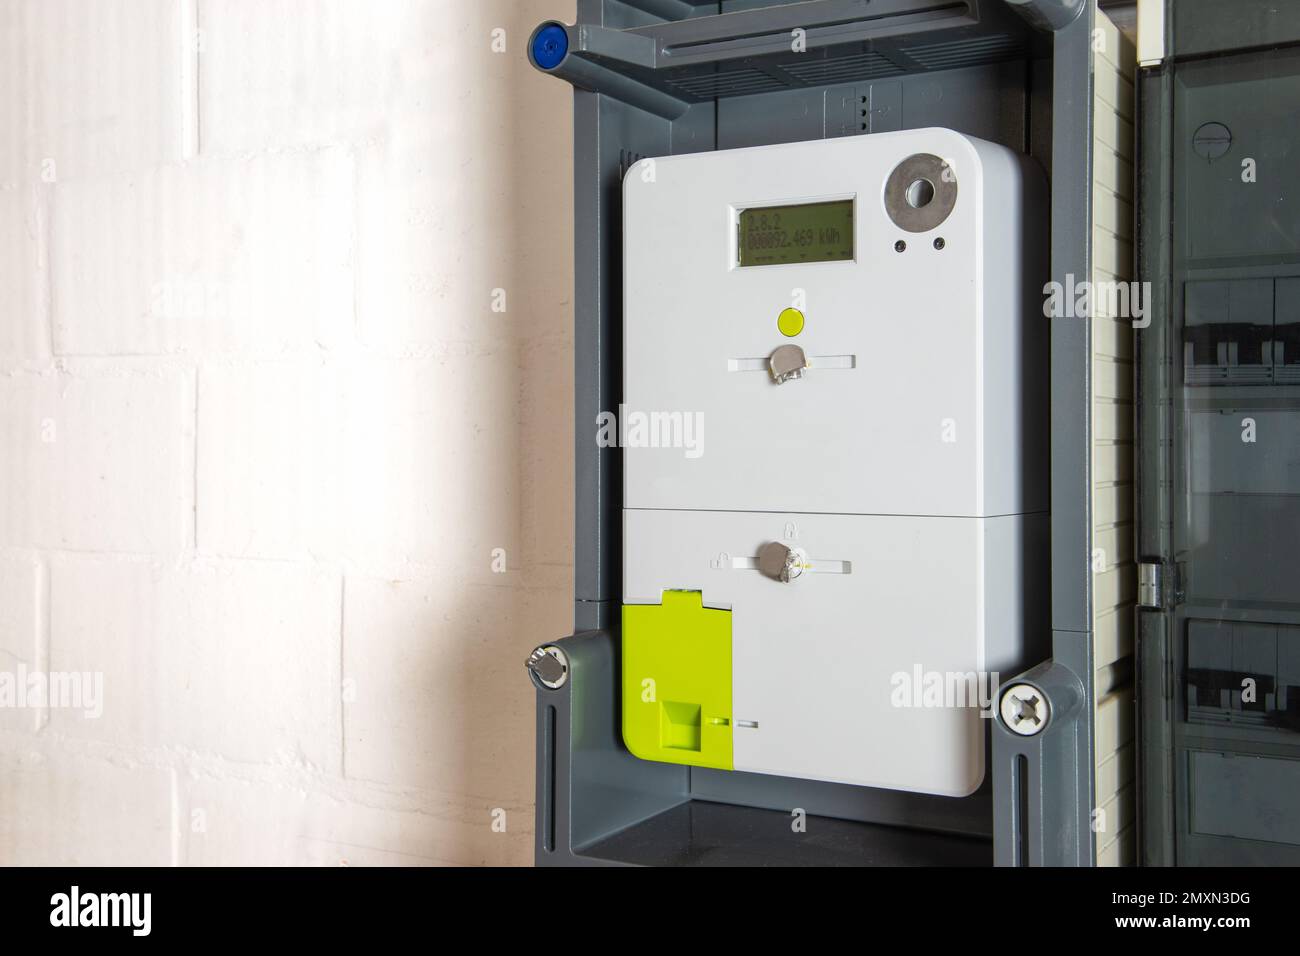 Intelligenter Zähler oder digitaler Energiemesser zur Bestimmung des Energieverbrauchs von Haushalten. Stockfoto